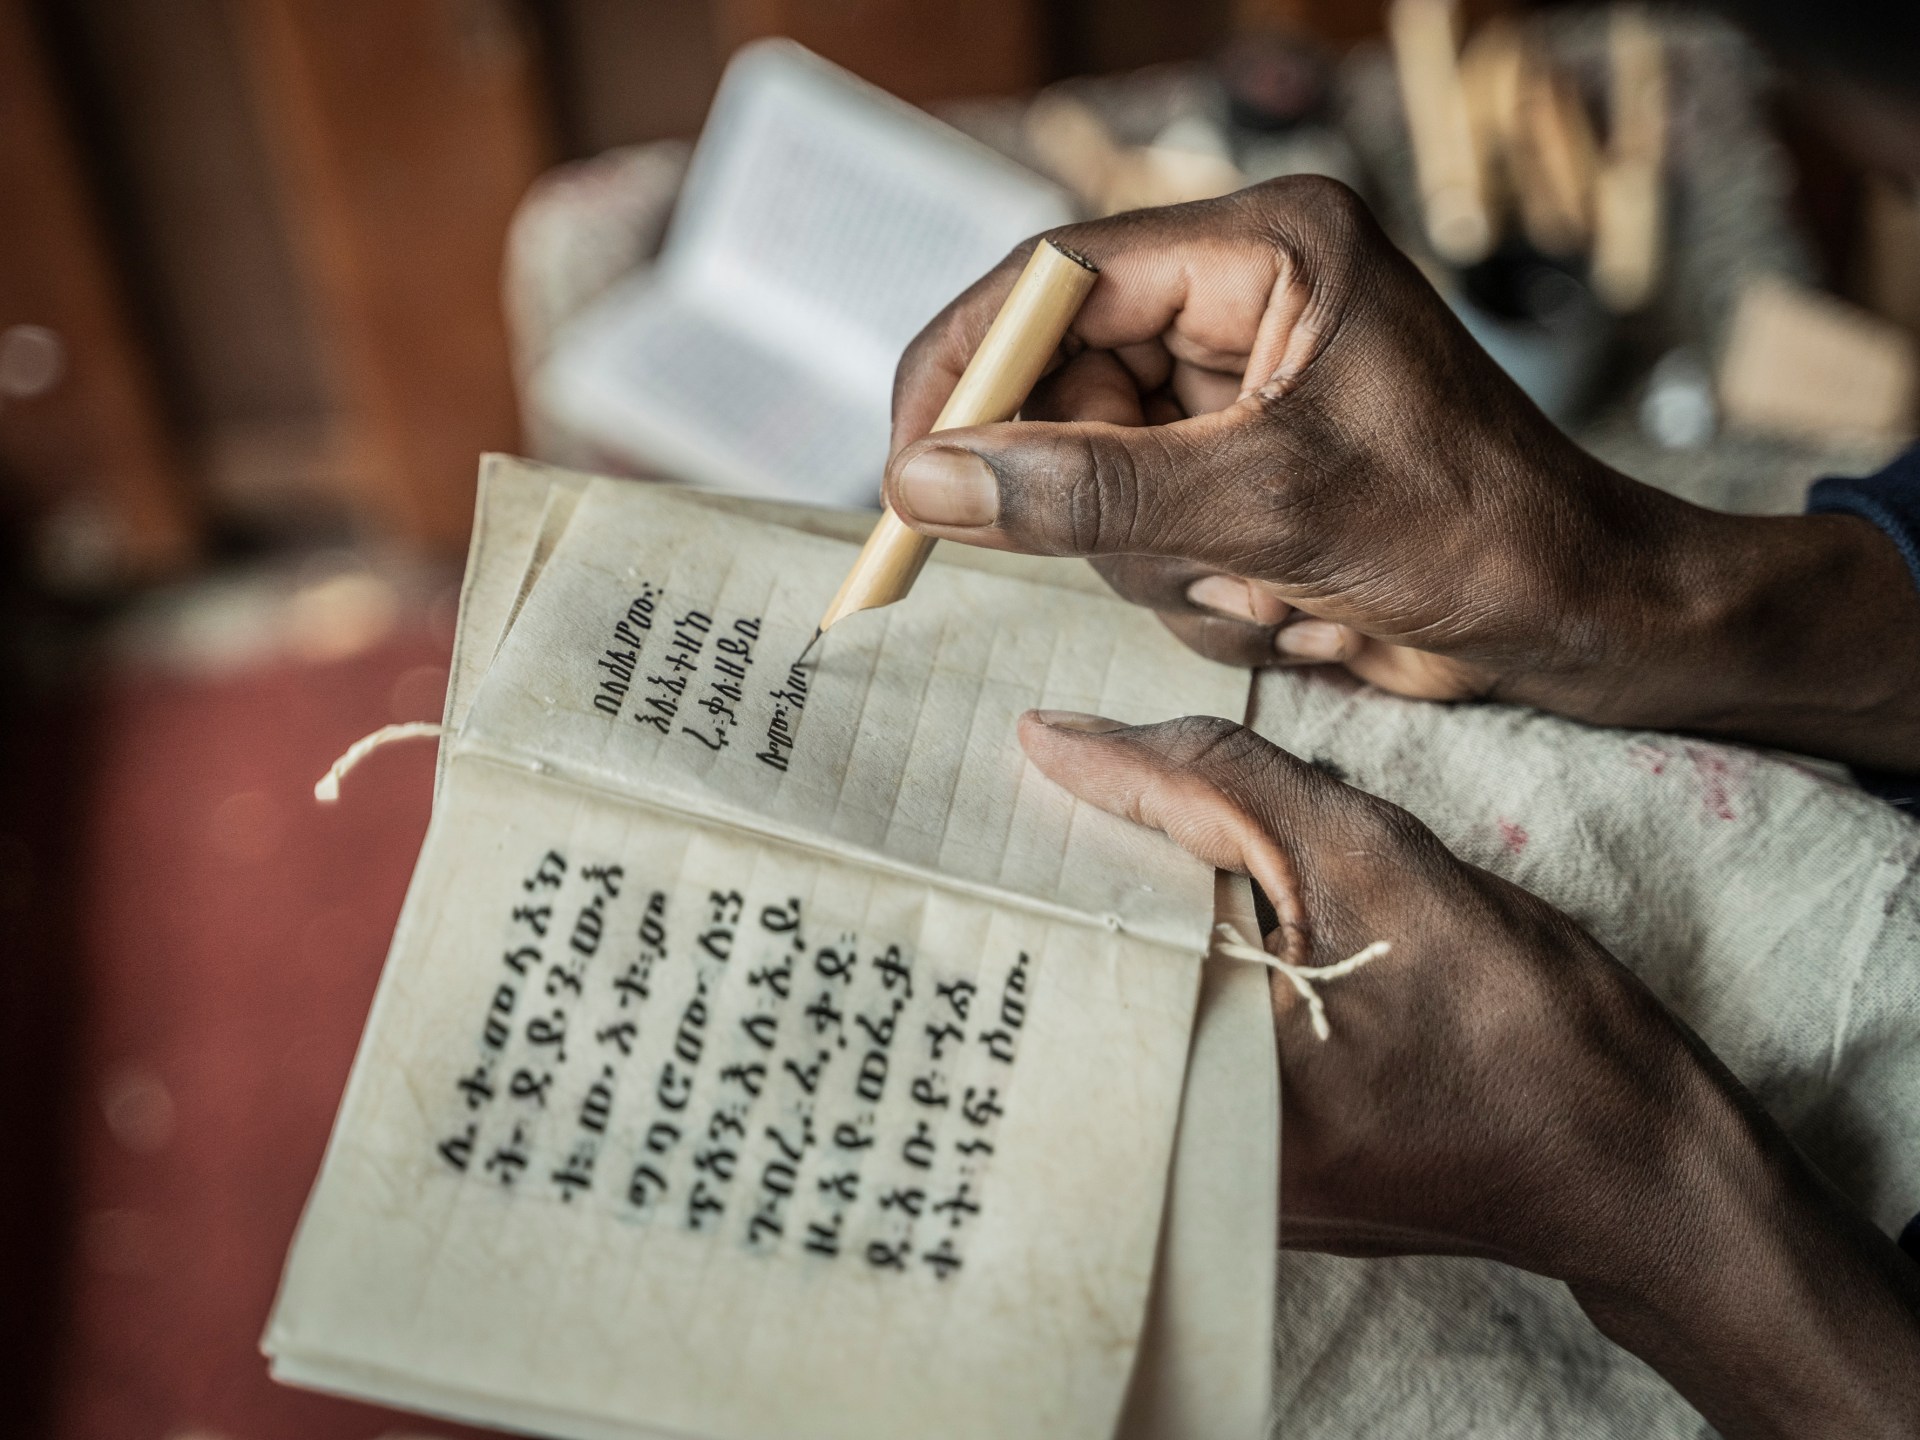 Pencarian Ethiopia untuk membuat ulang manuskrip kuno |  Seni budaya